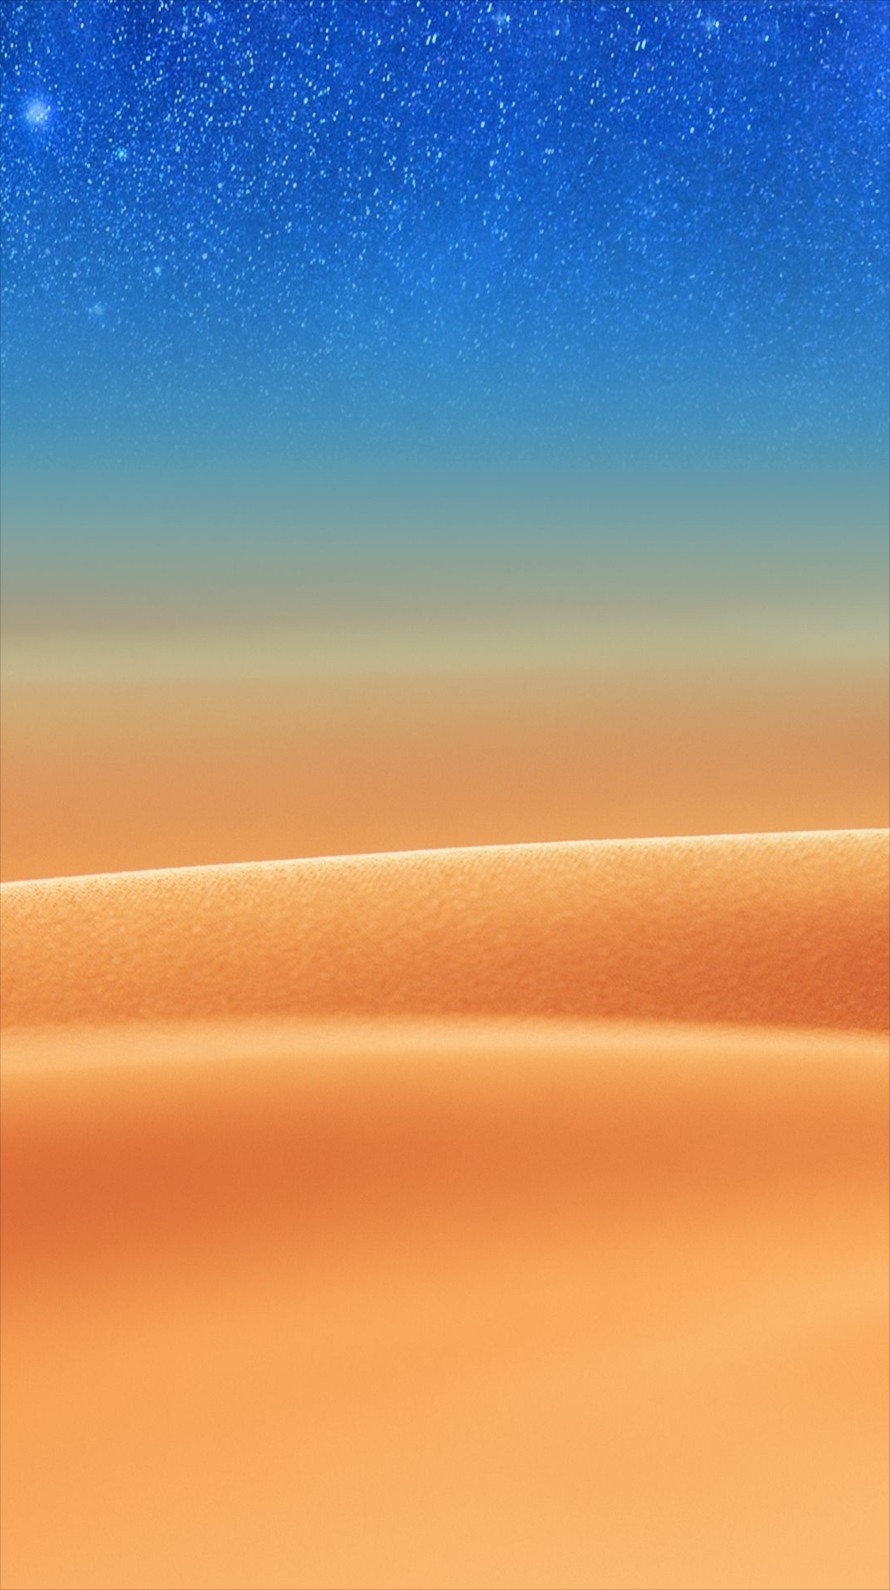 綺麗な砂漠と星空 iPhone6壁紙